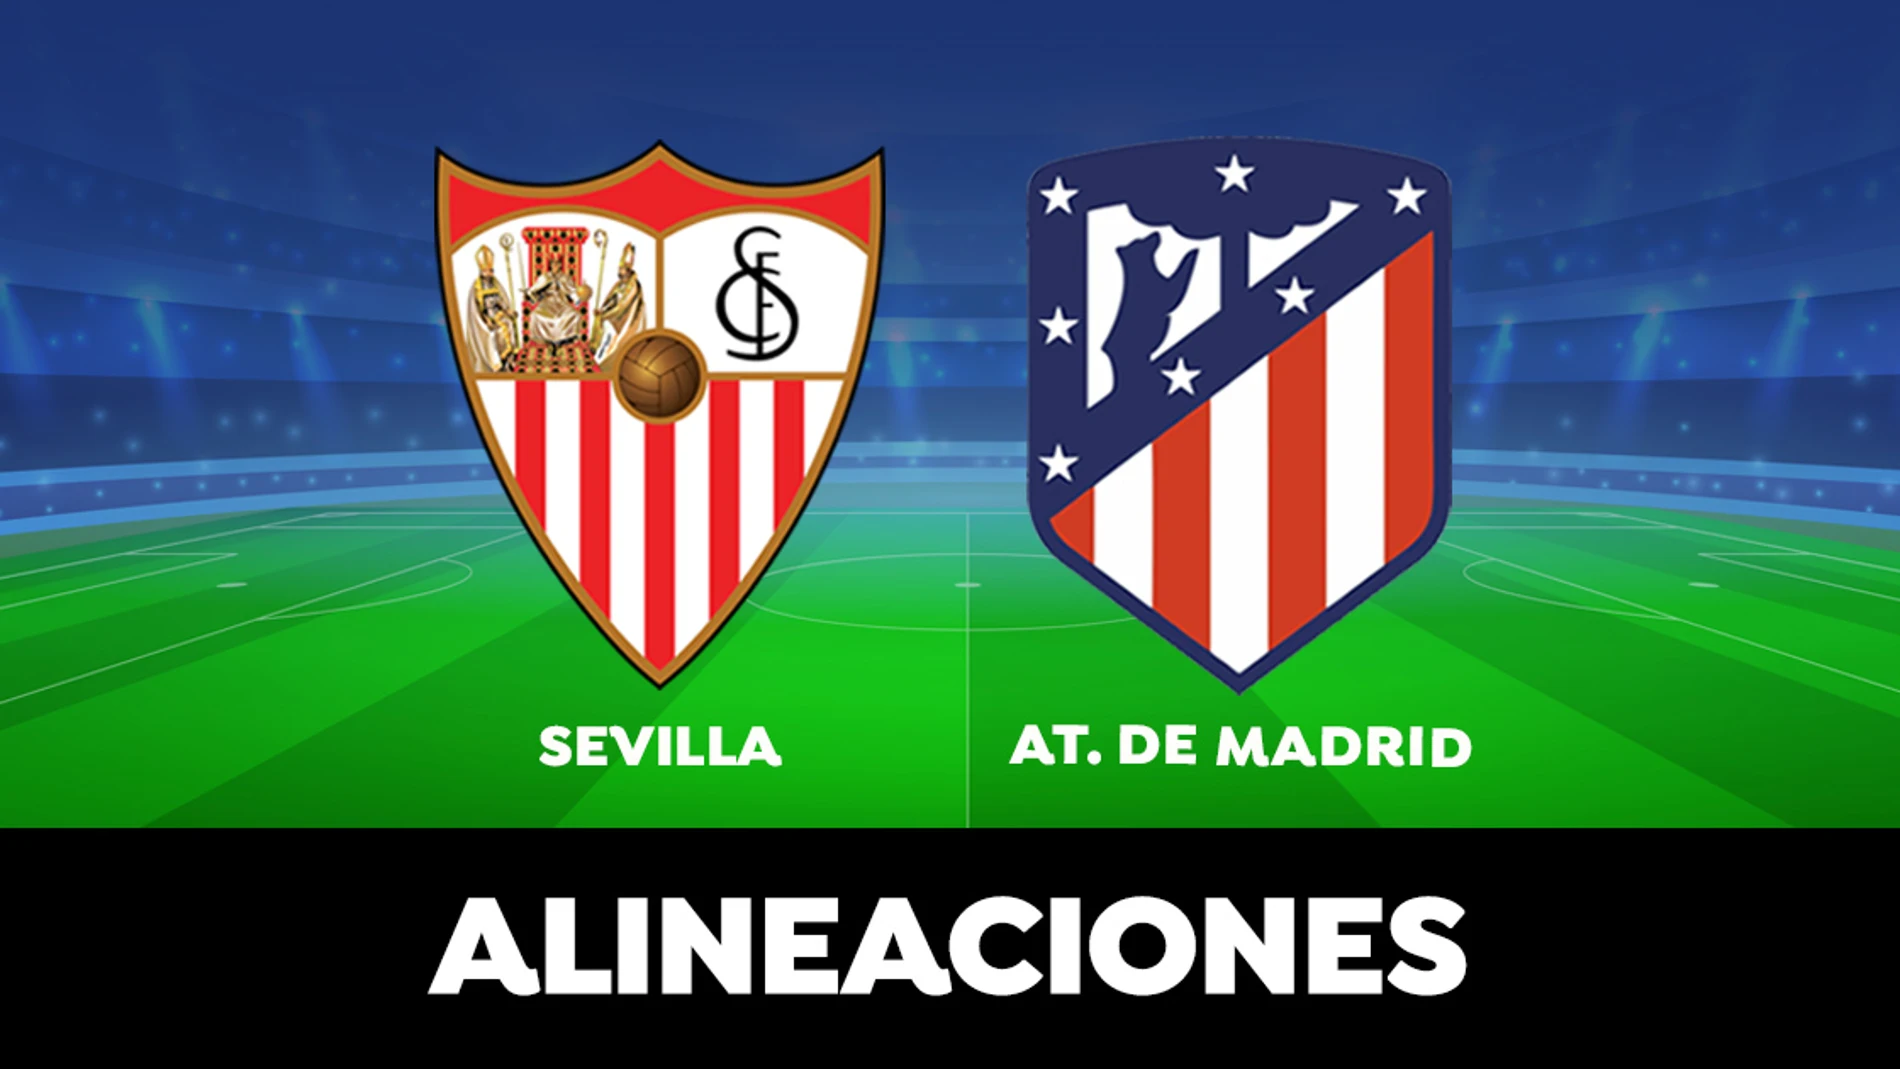 Alineación del Atlético de Madrid hoy contra el Sevilla en el partido de la Liga Santander